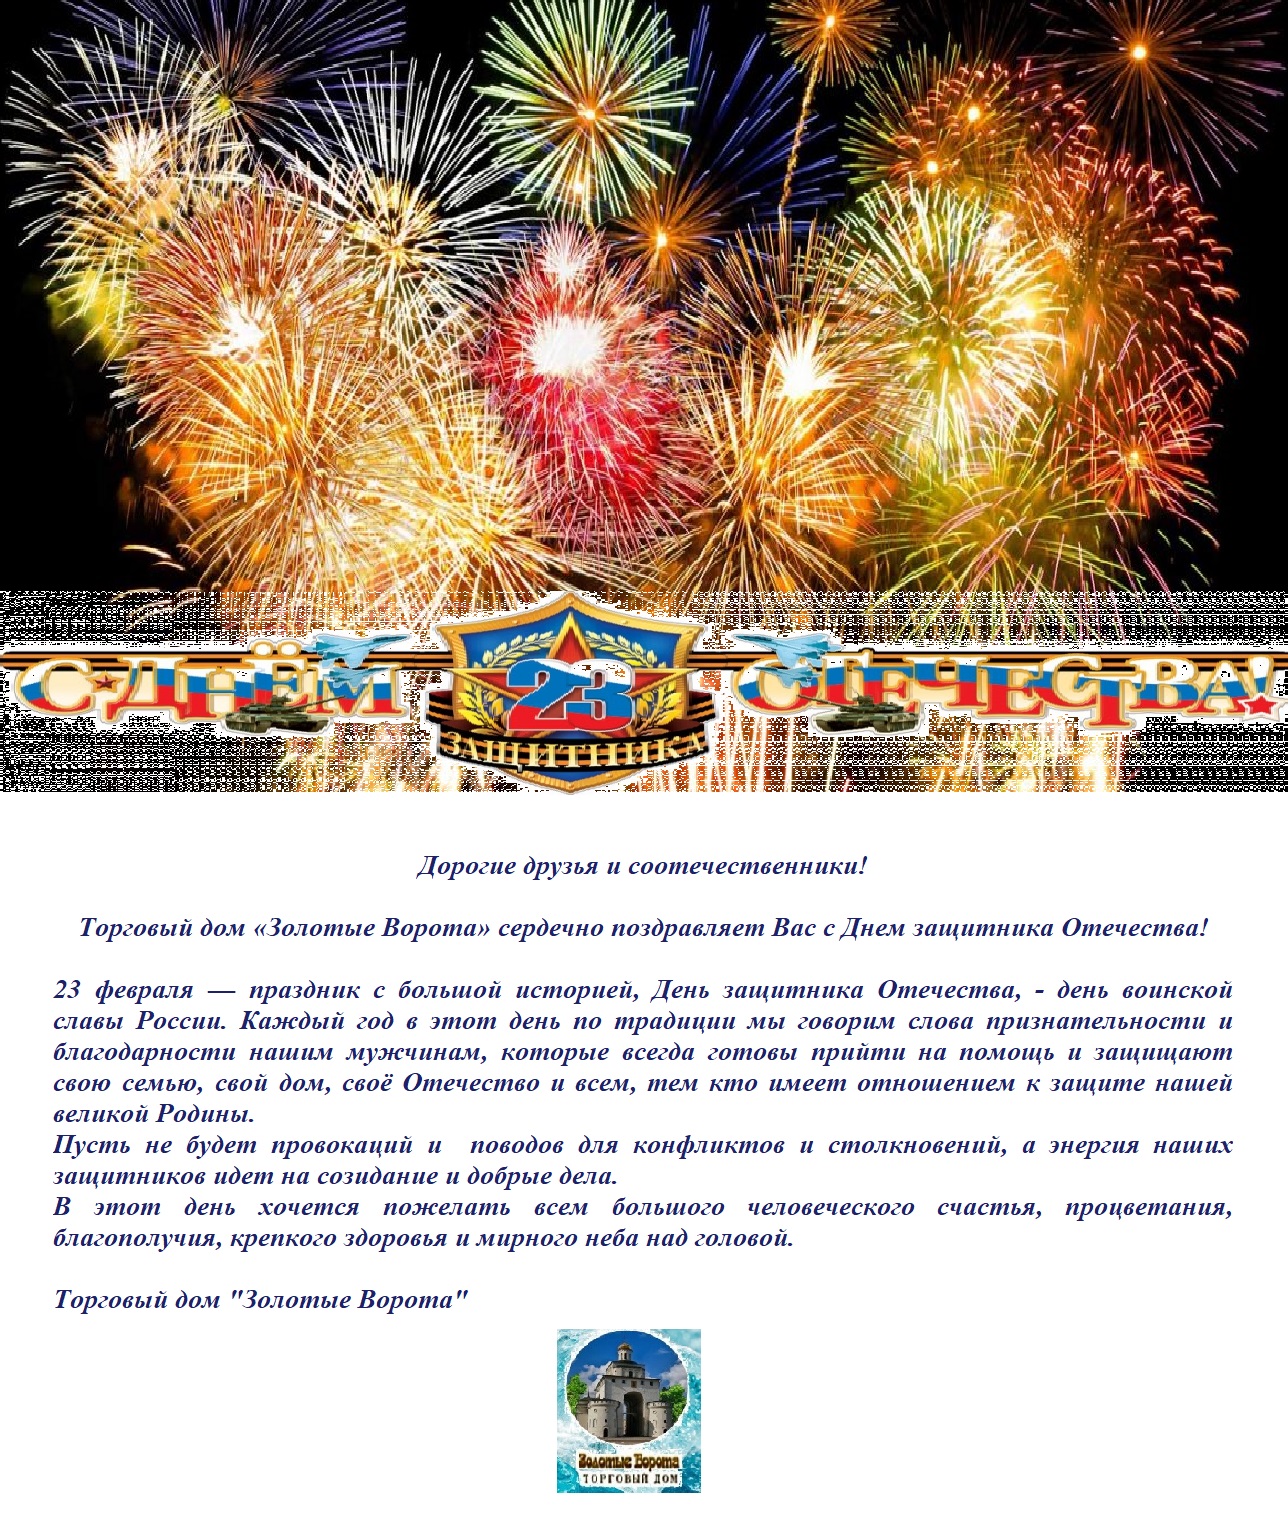 Поздравление УК ТД "Эвита" - Торгового дома "Золотые Ворота" с Днем защитника Отечества.